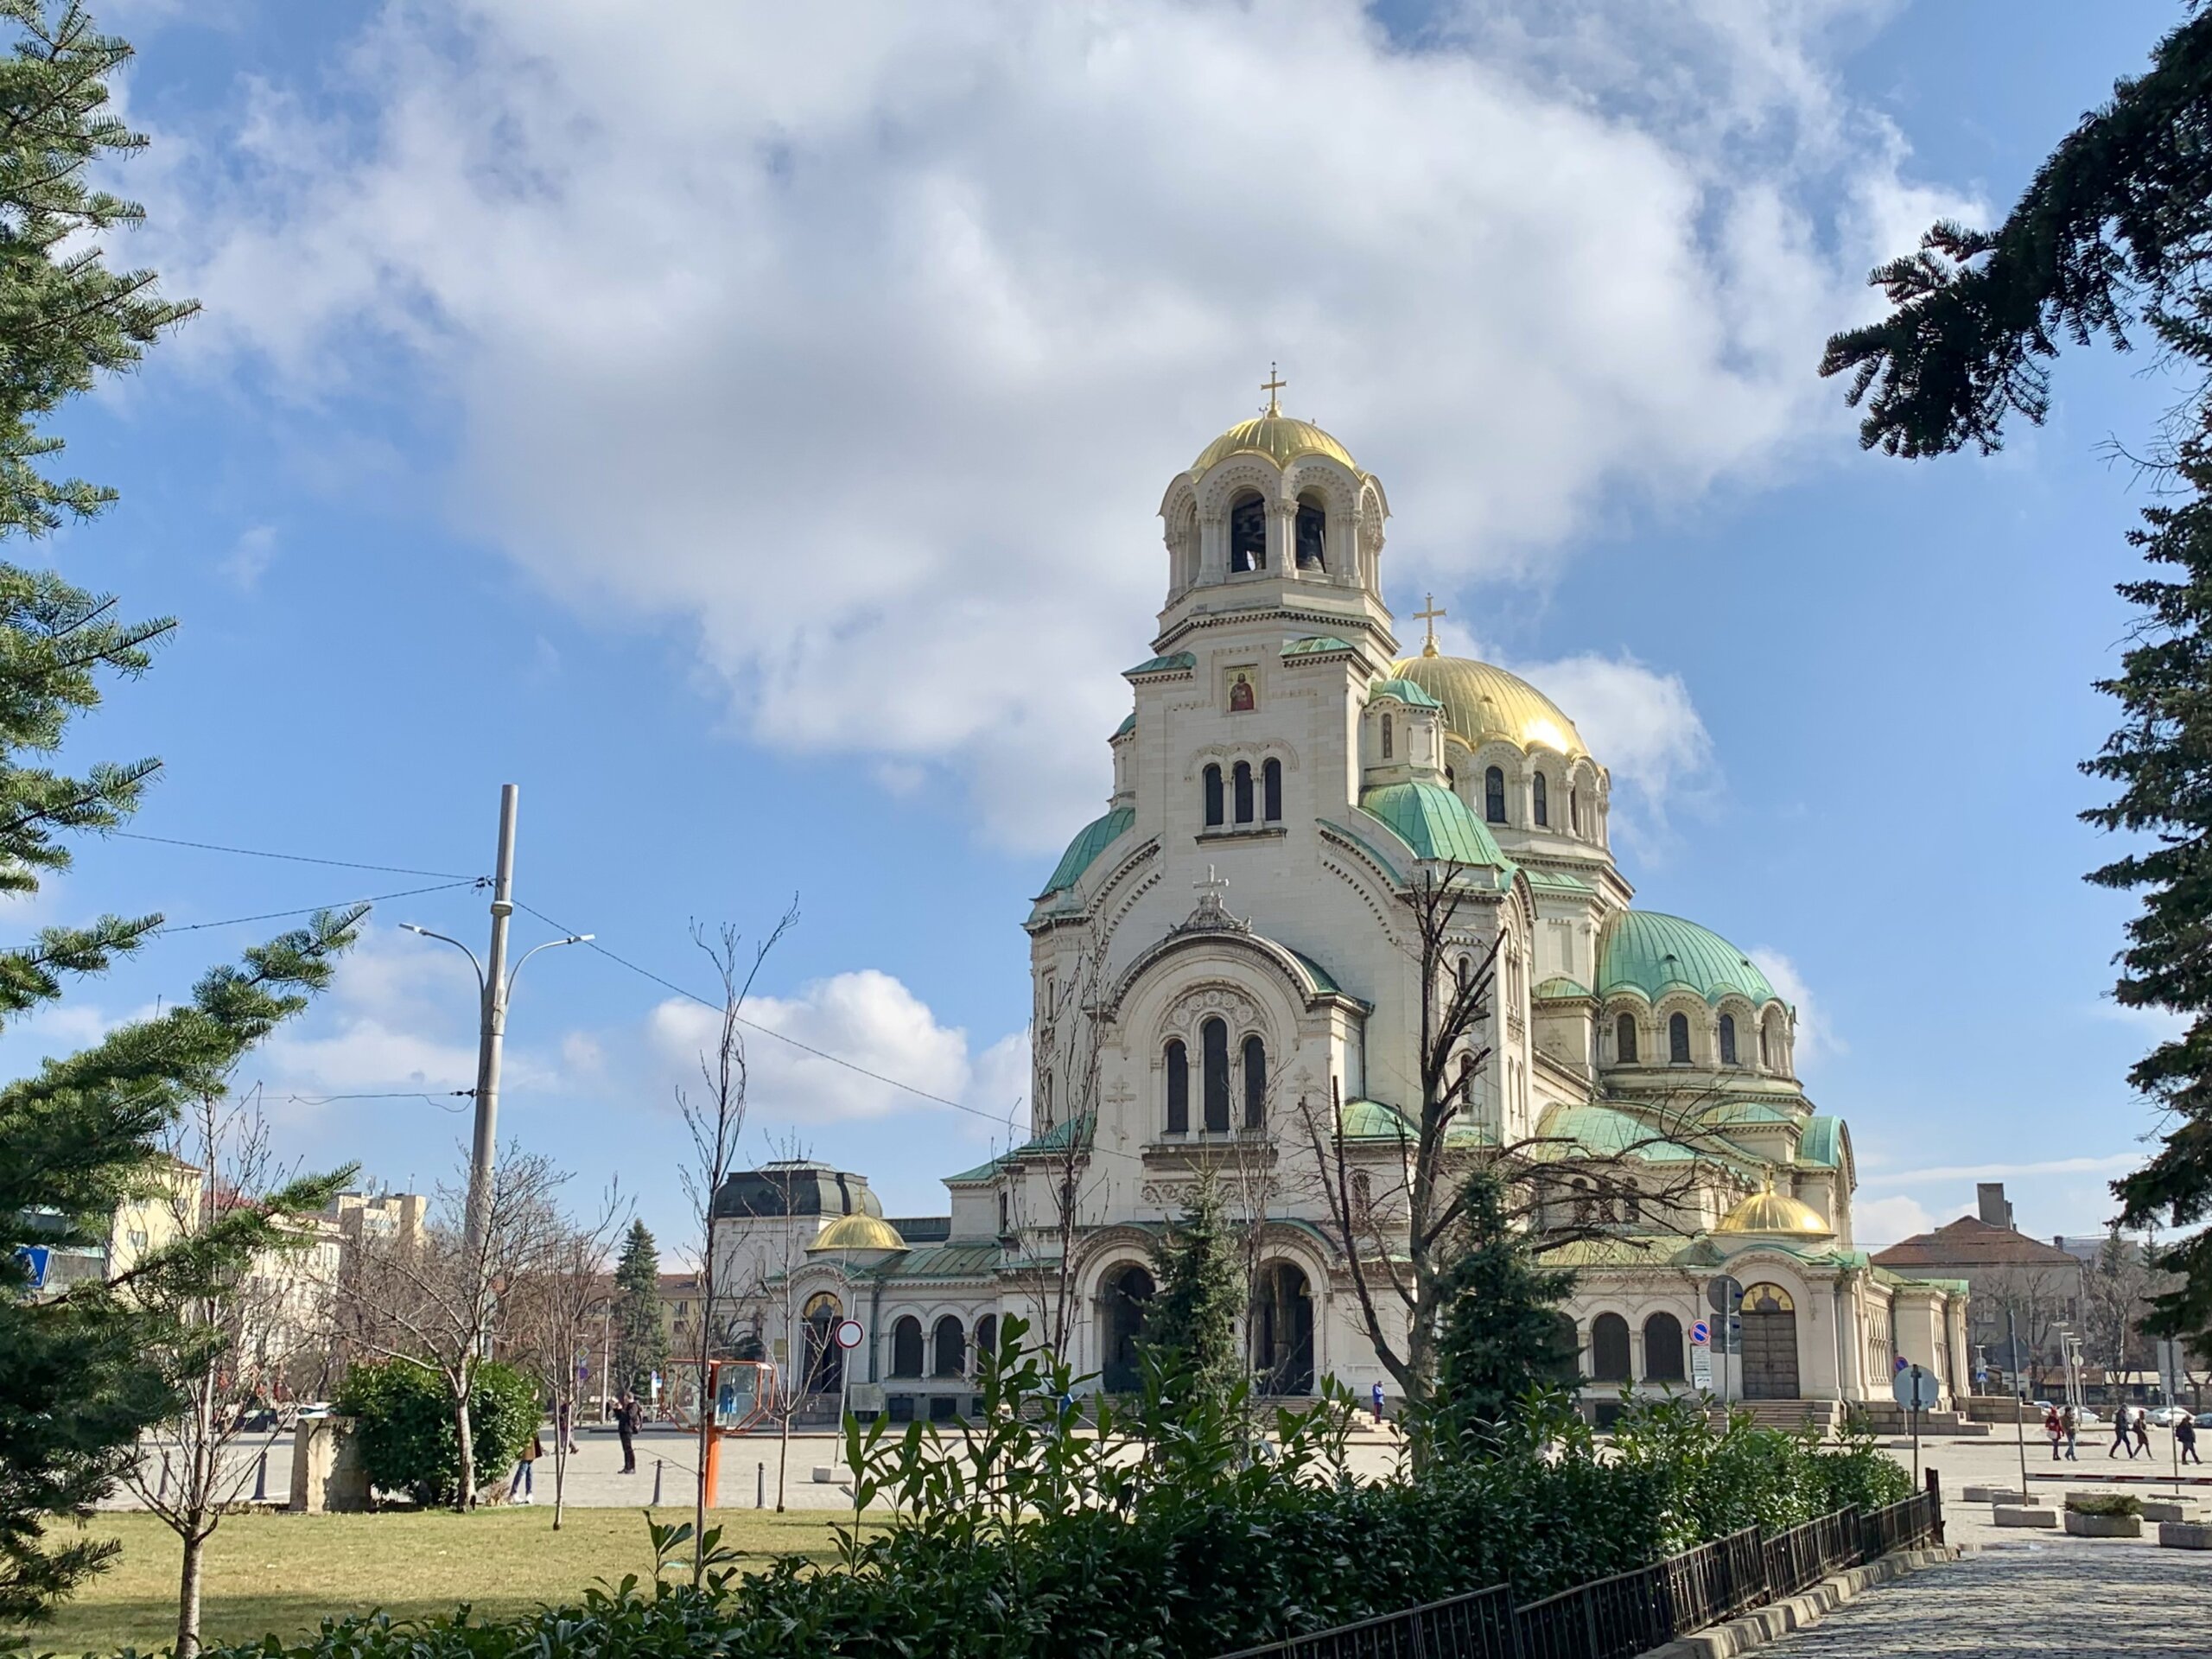 De Alexander Nevsky Kathedraal is een van de bekendste bezienswaardigheden in Sofia, Bulgarije.